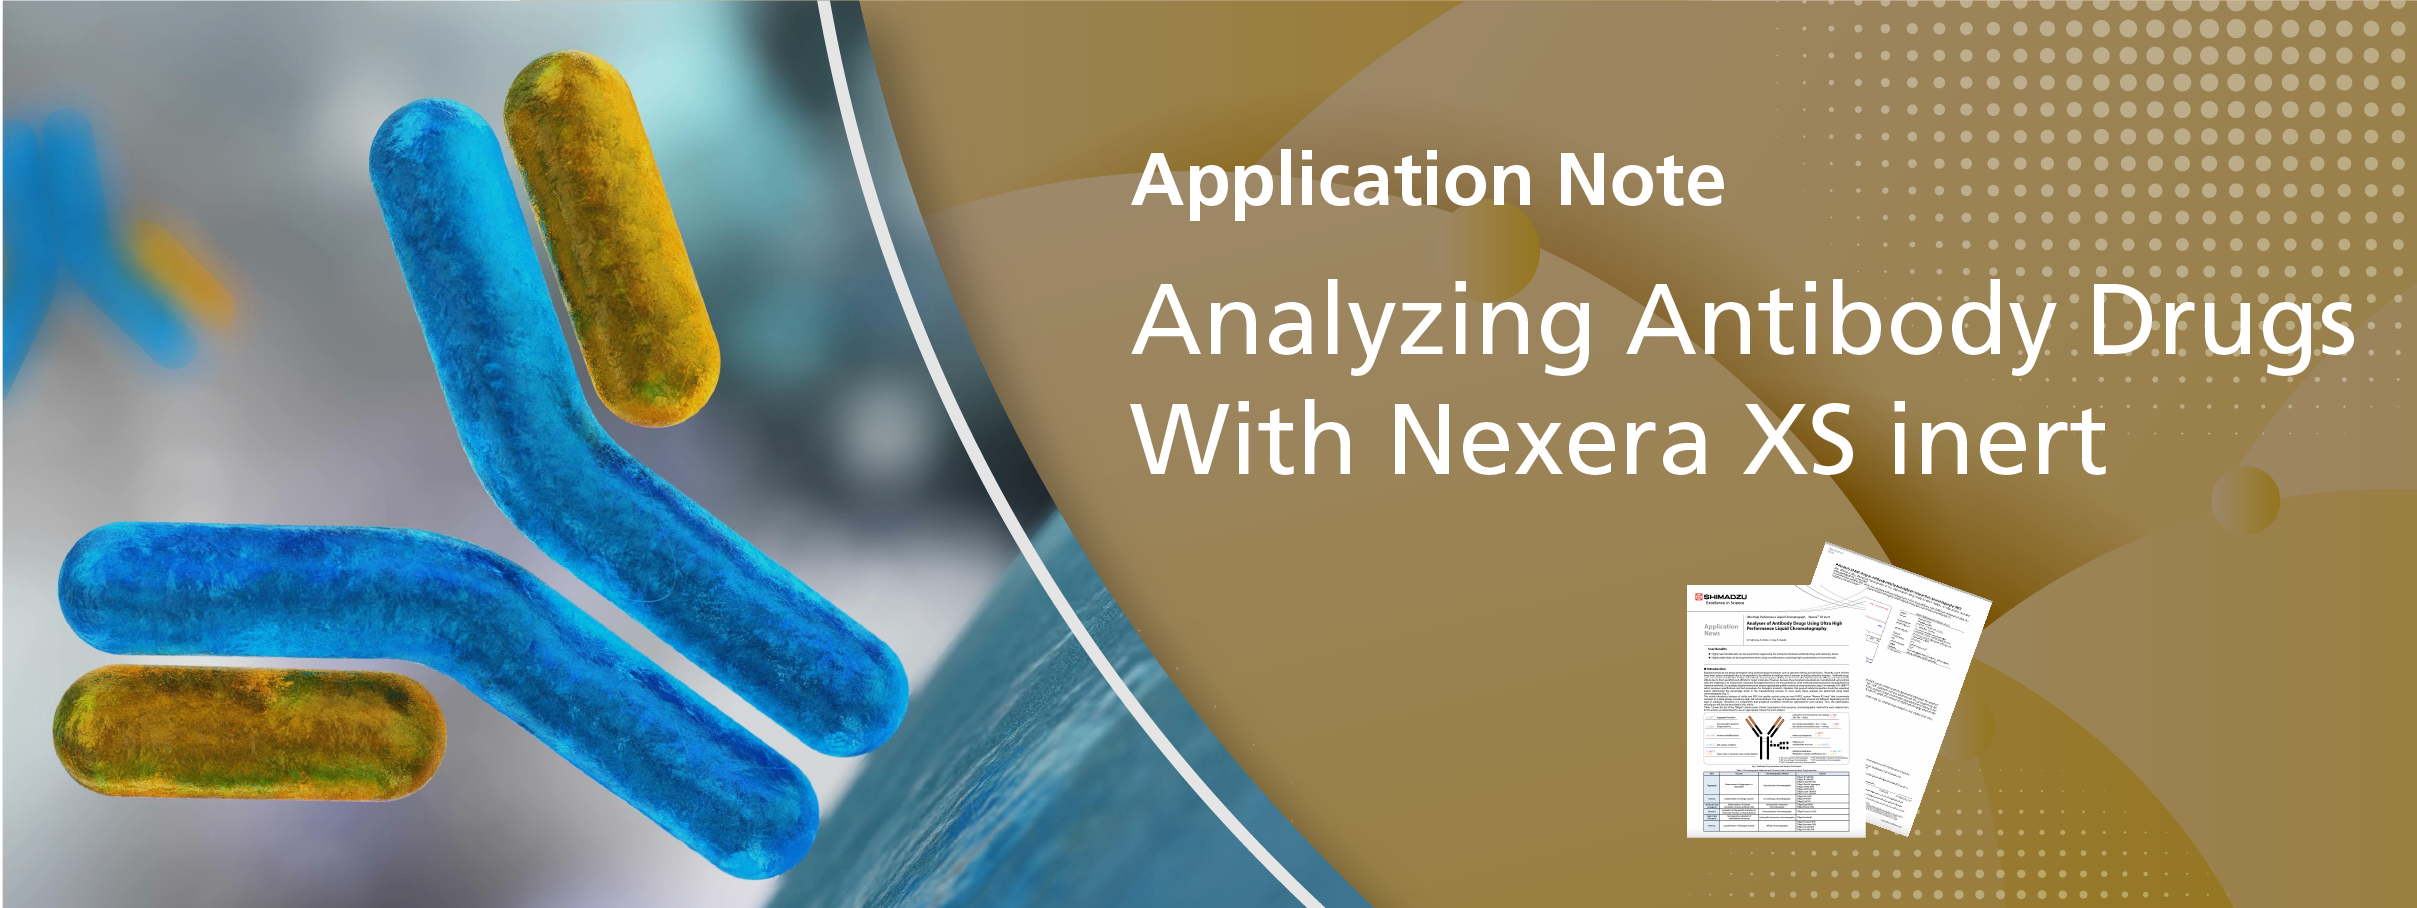 Analyzing Antibody Drugs with Nexera XS inert